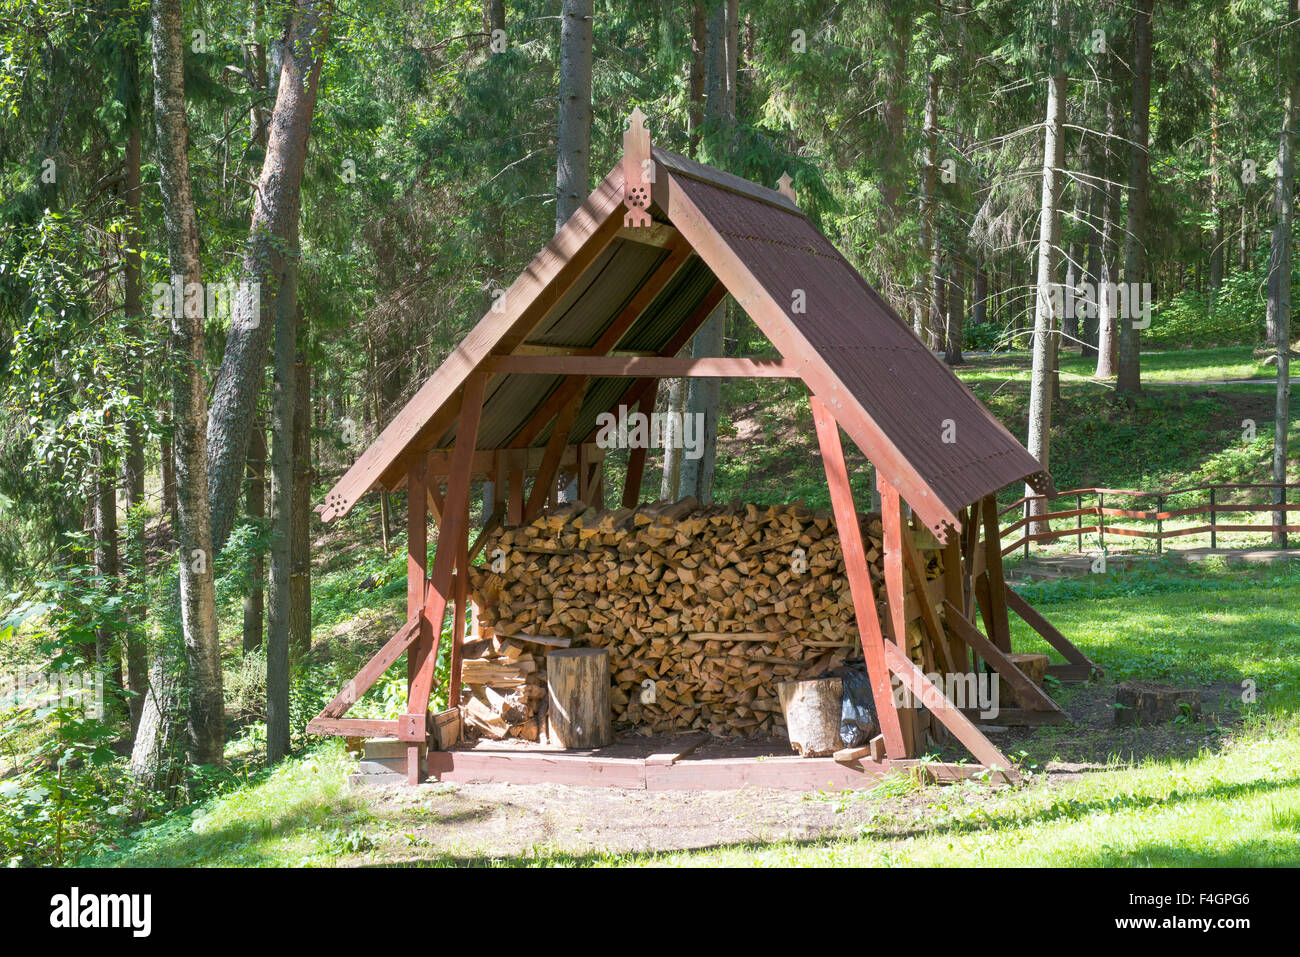 Bûcher en bois avec du bois de chauffage coupé sont soigneusement disposées Banque D'Images